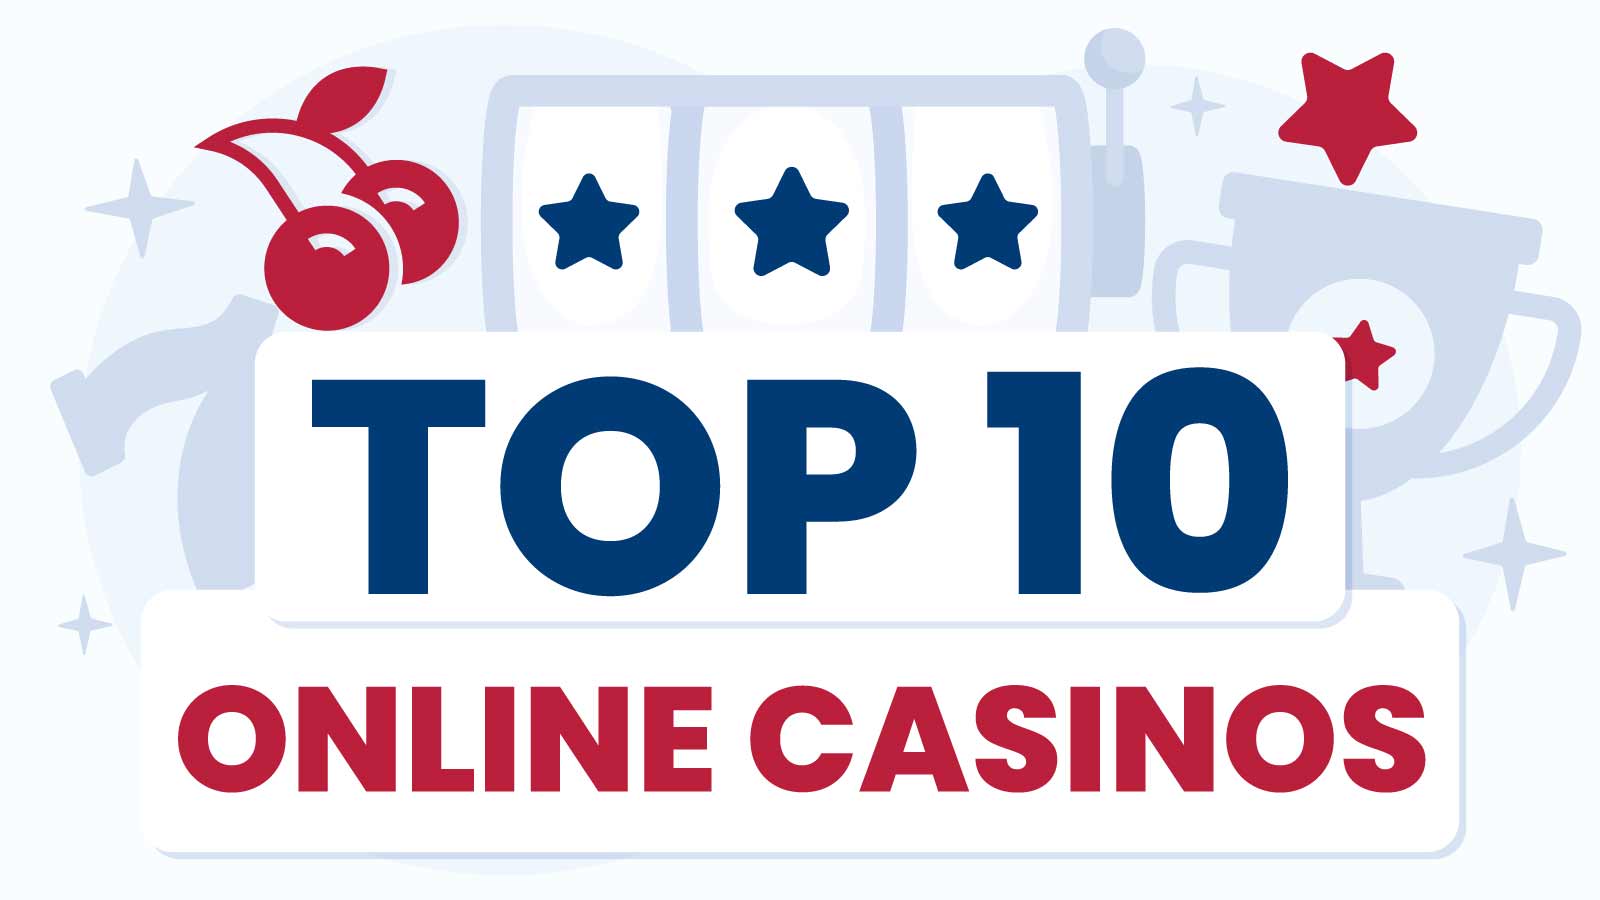 Top 10 Online Casinos UK